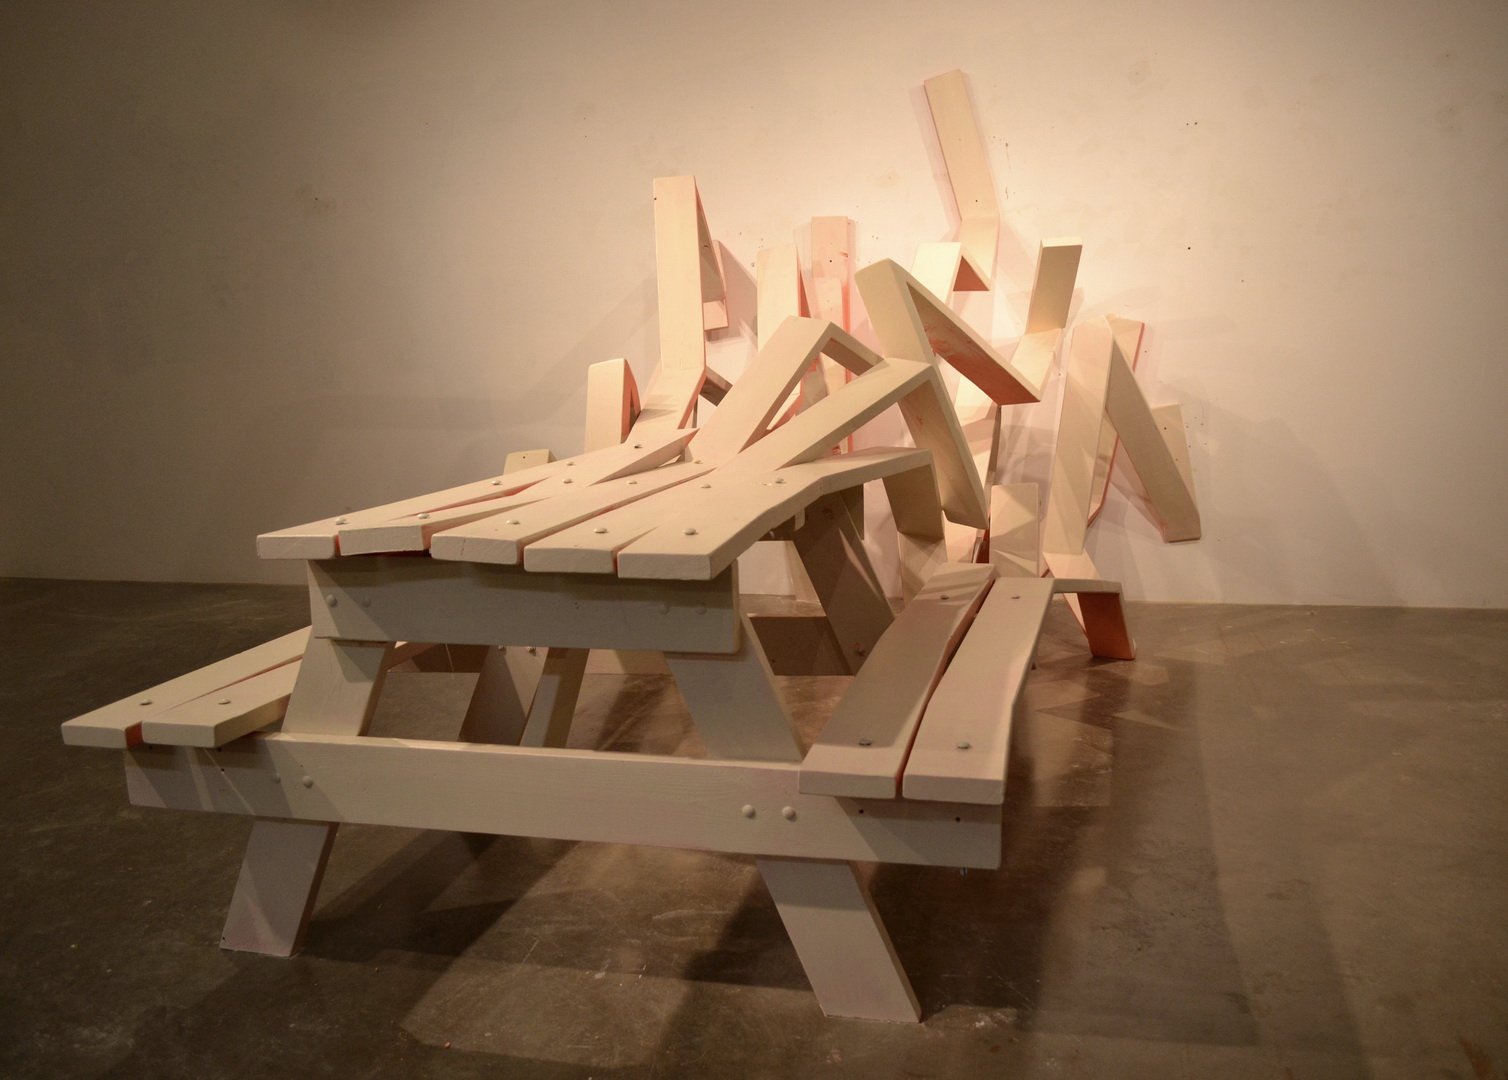 Необычные столы для пикника от Майкла Бейца